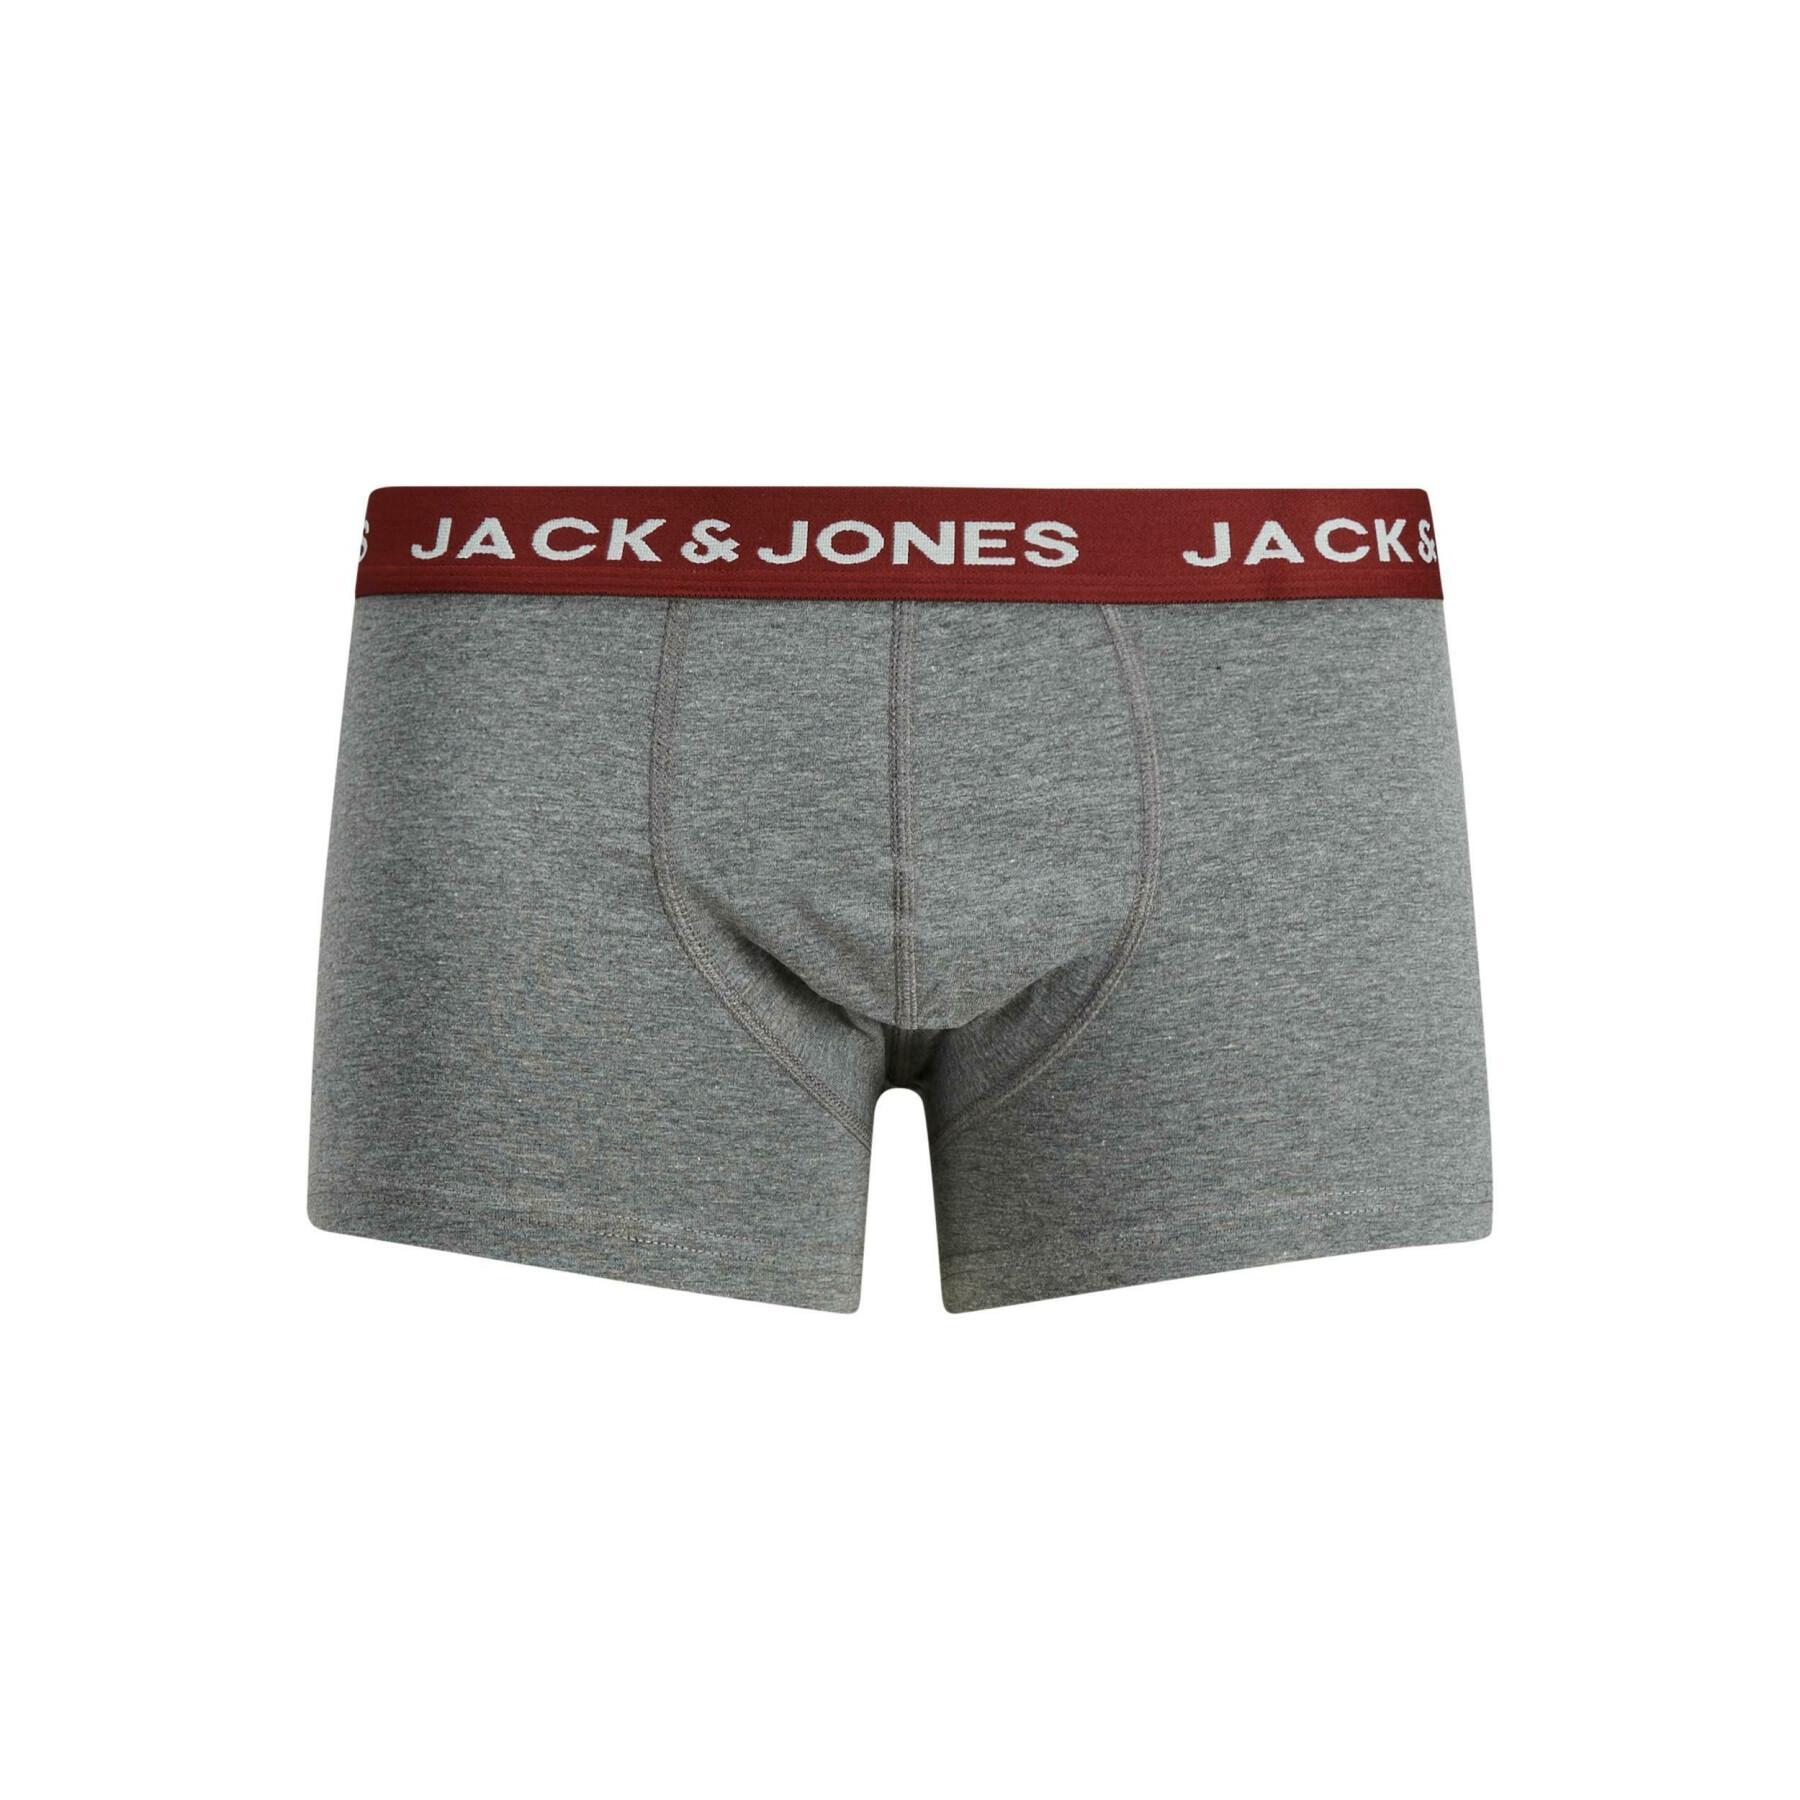 2er-Set Boxershorts Jack & Jones Jacgrud